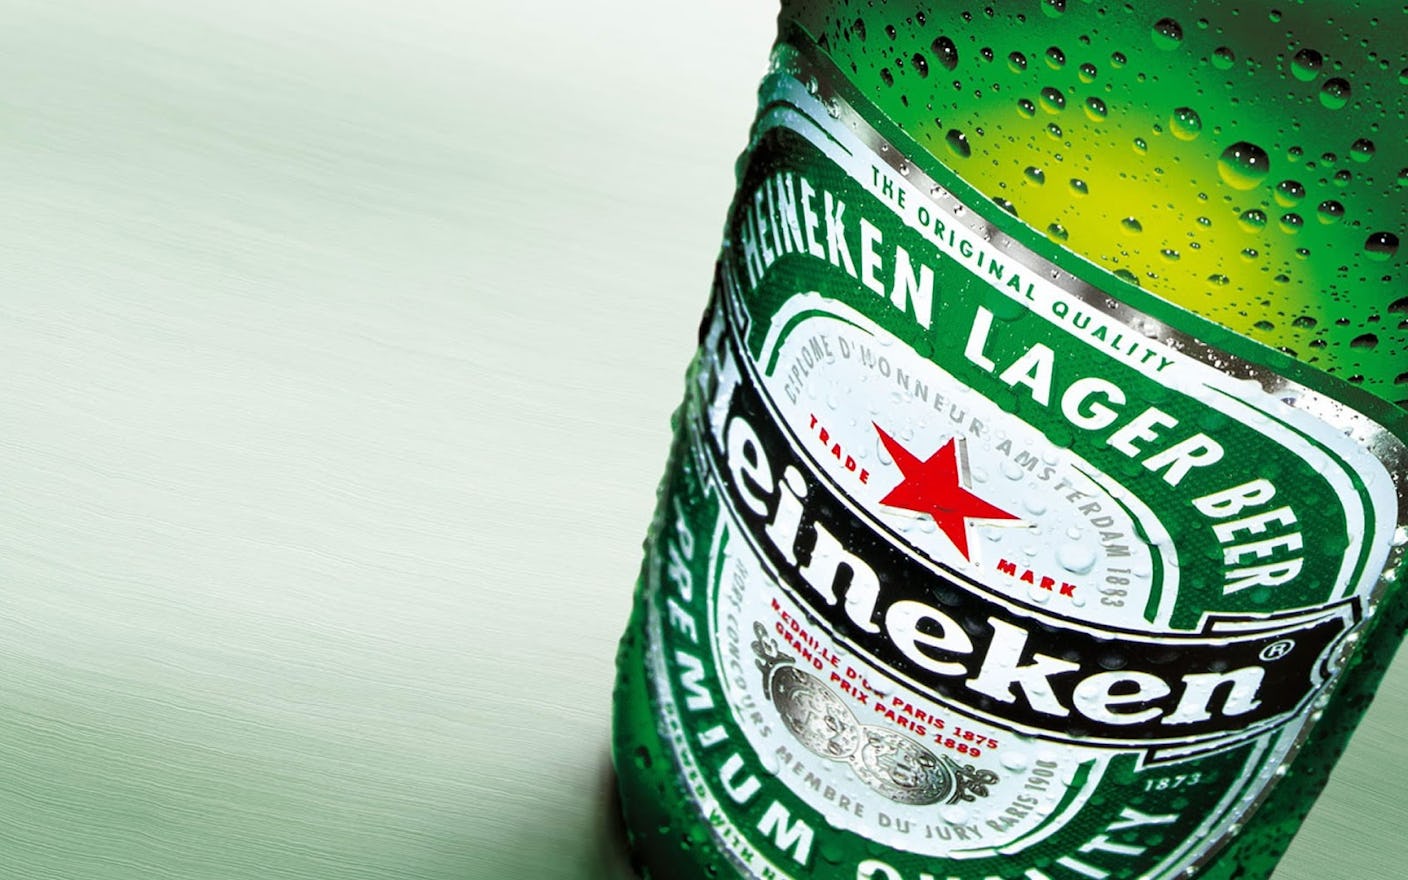 Groeiend Heineken ziet lastige omstandigheden